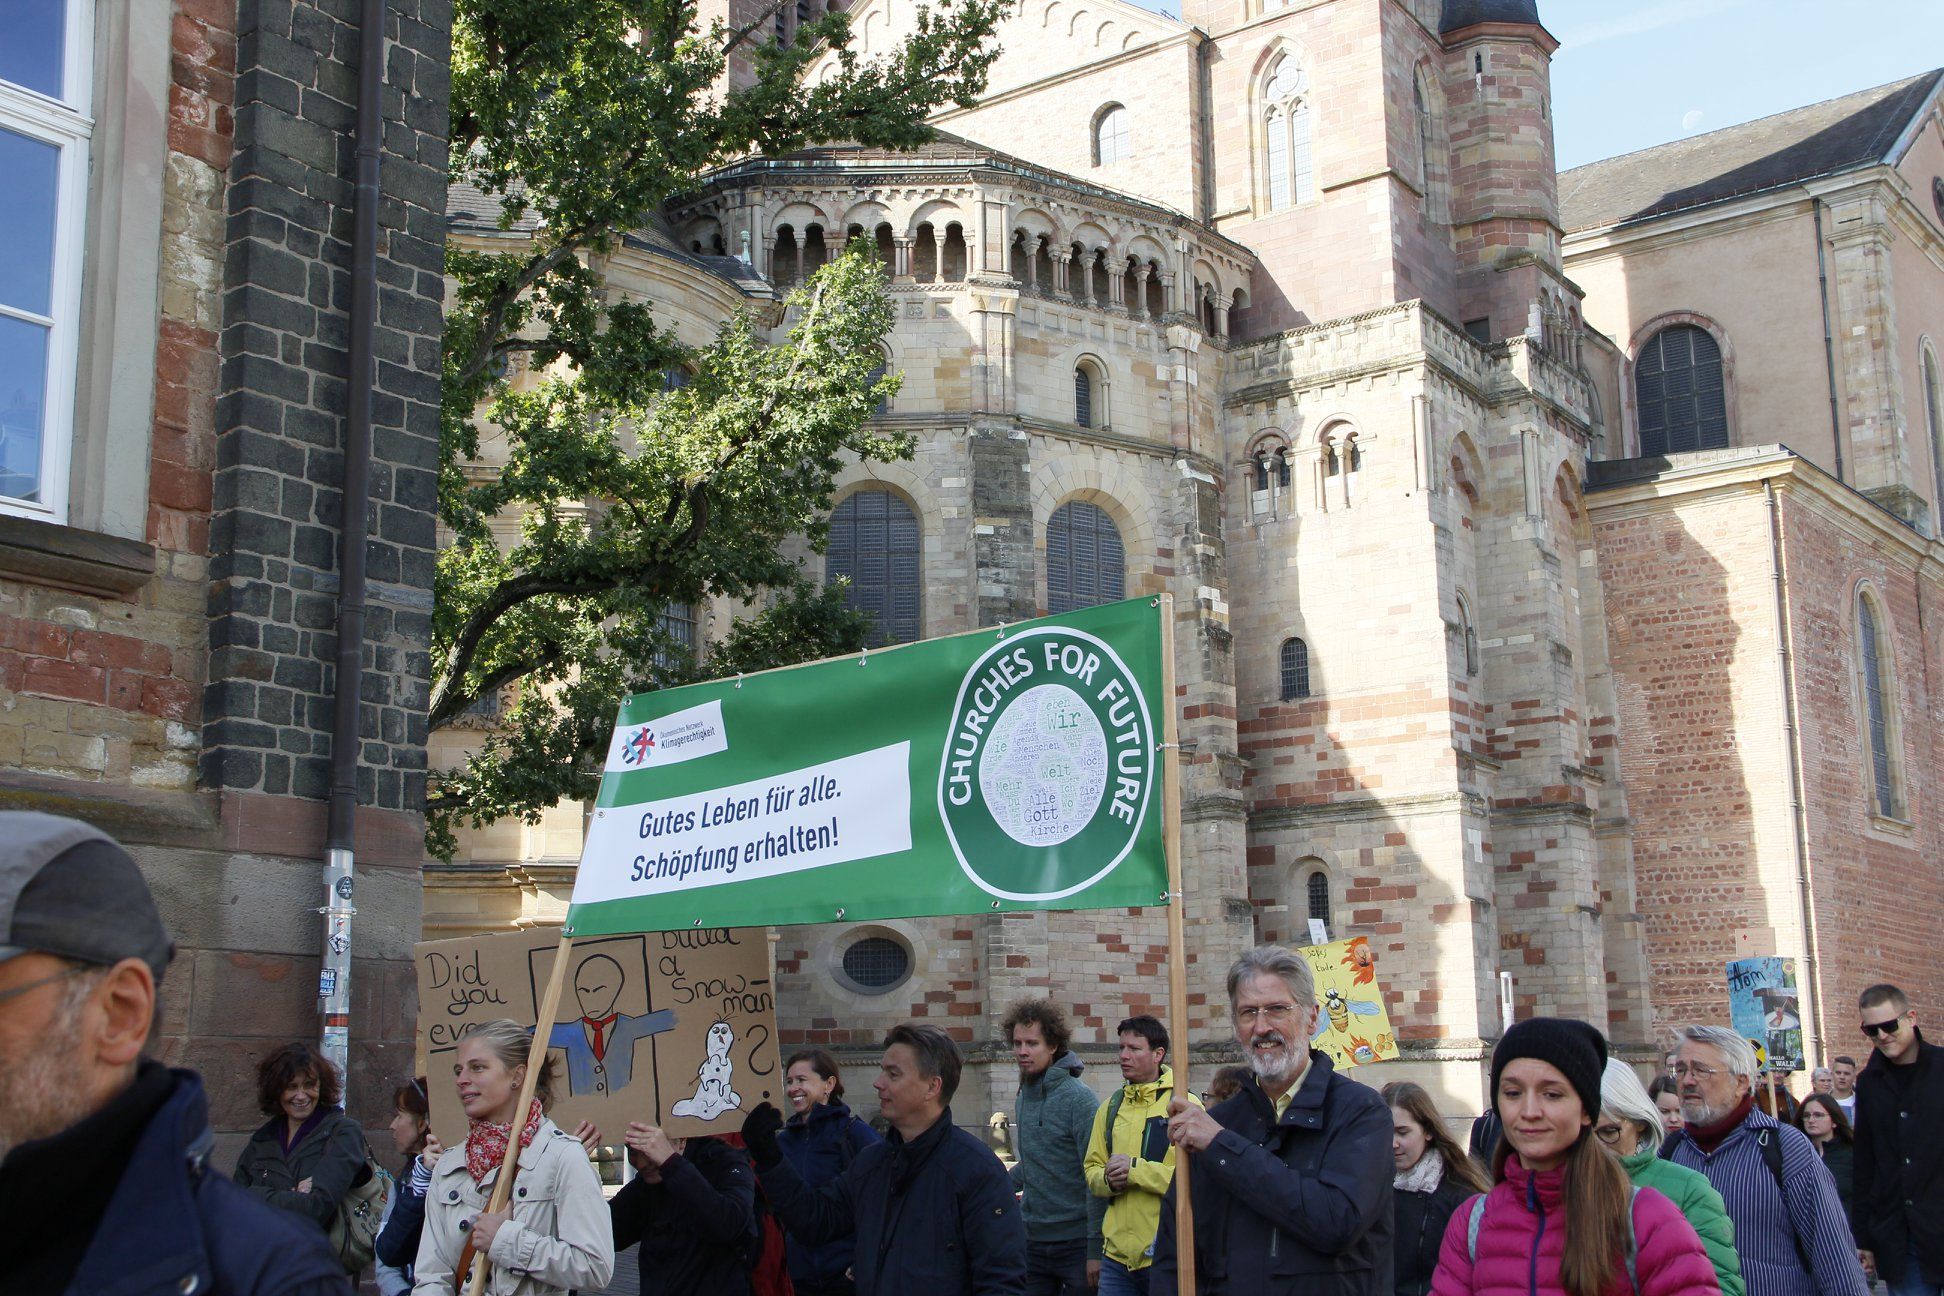 Churches for Future auf der 'Fridays for Future'-Demonstration im vergangenen September.